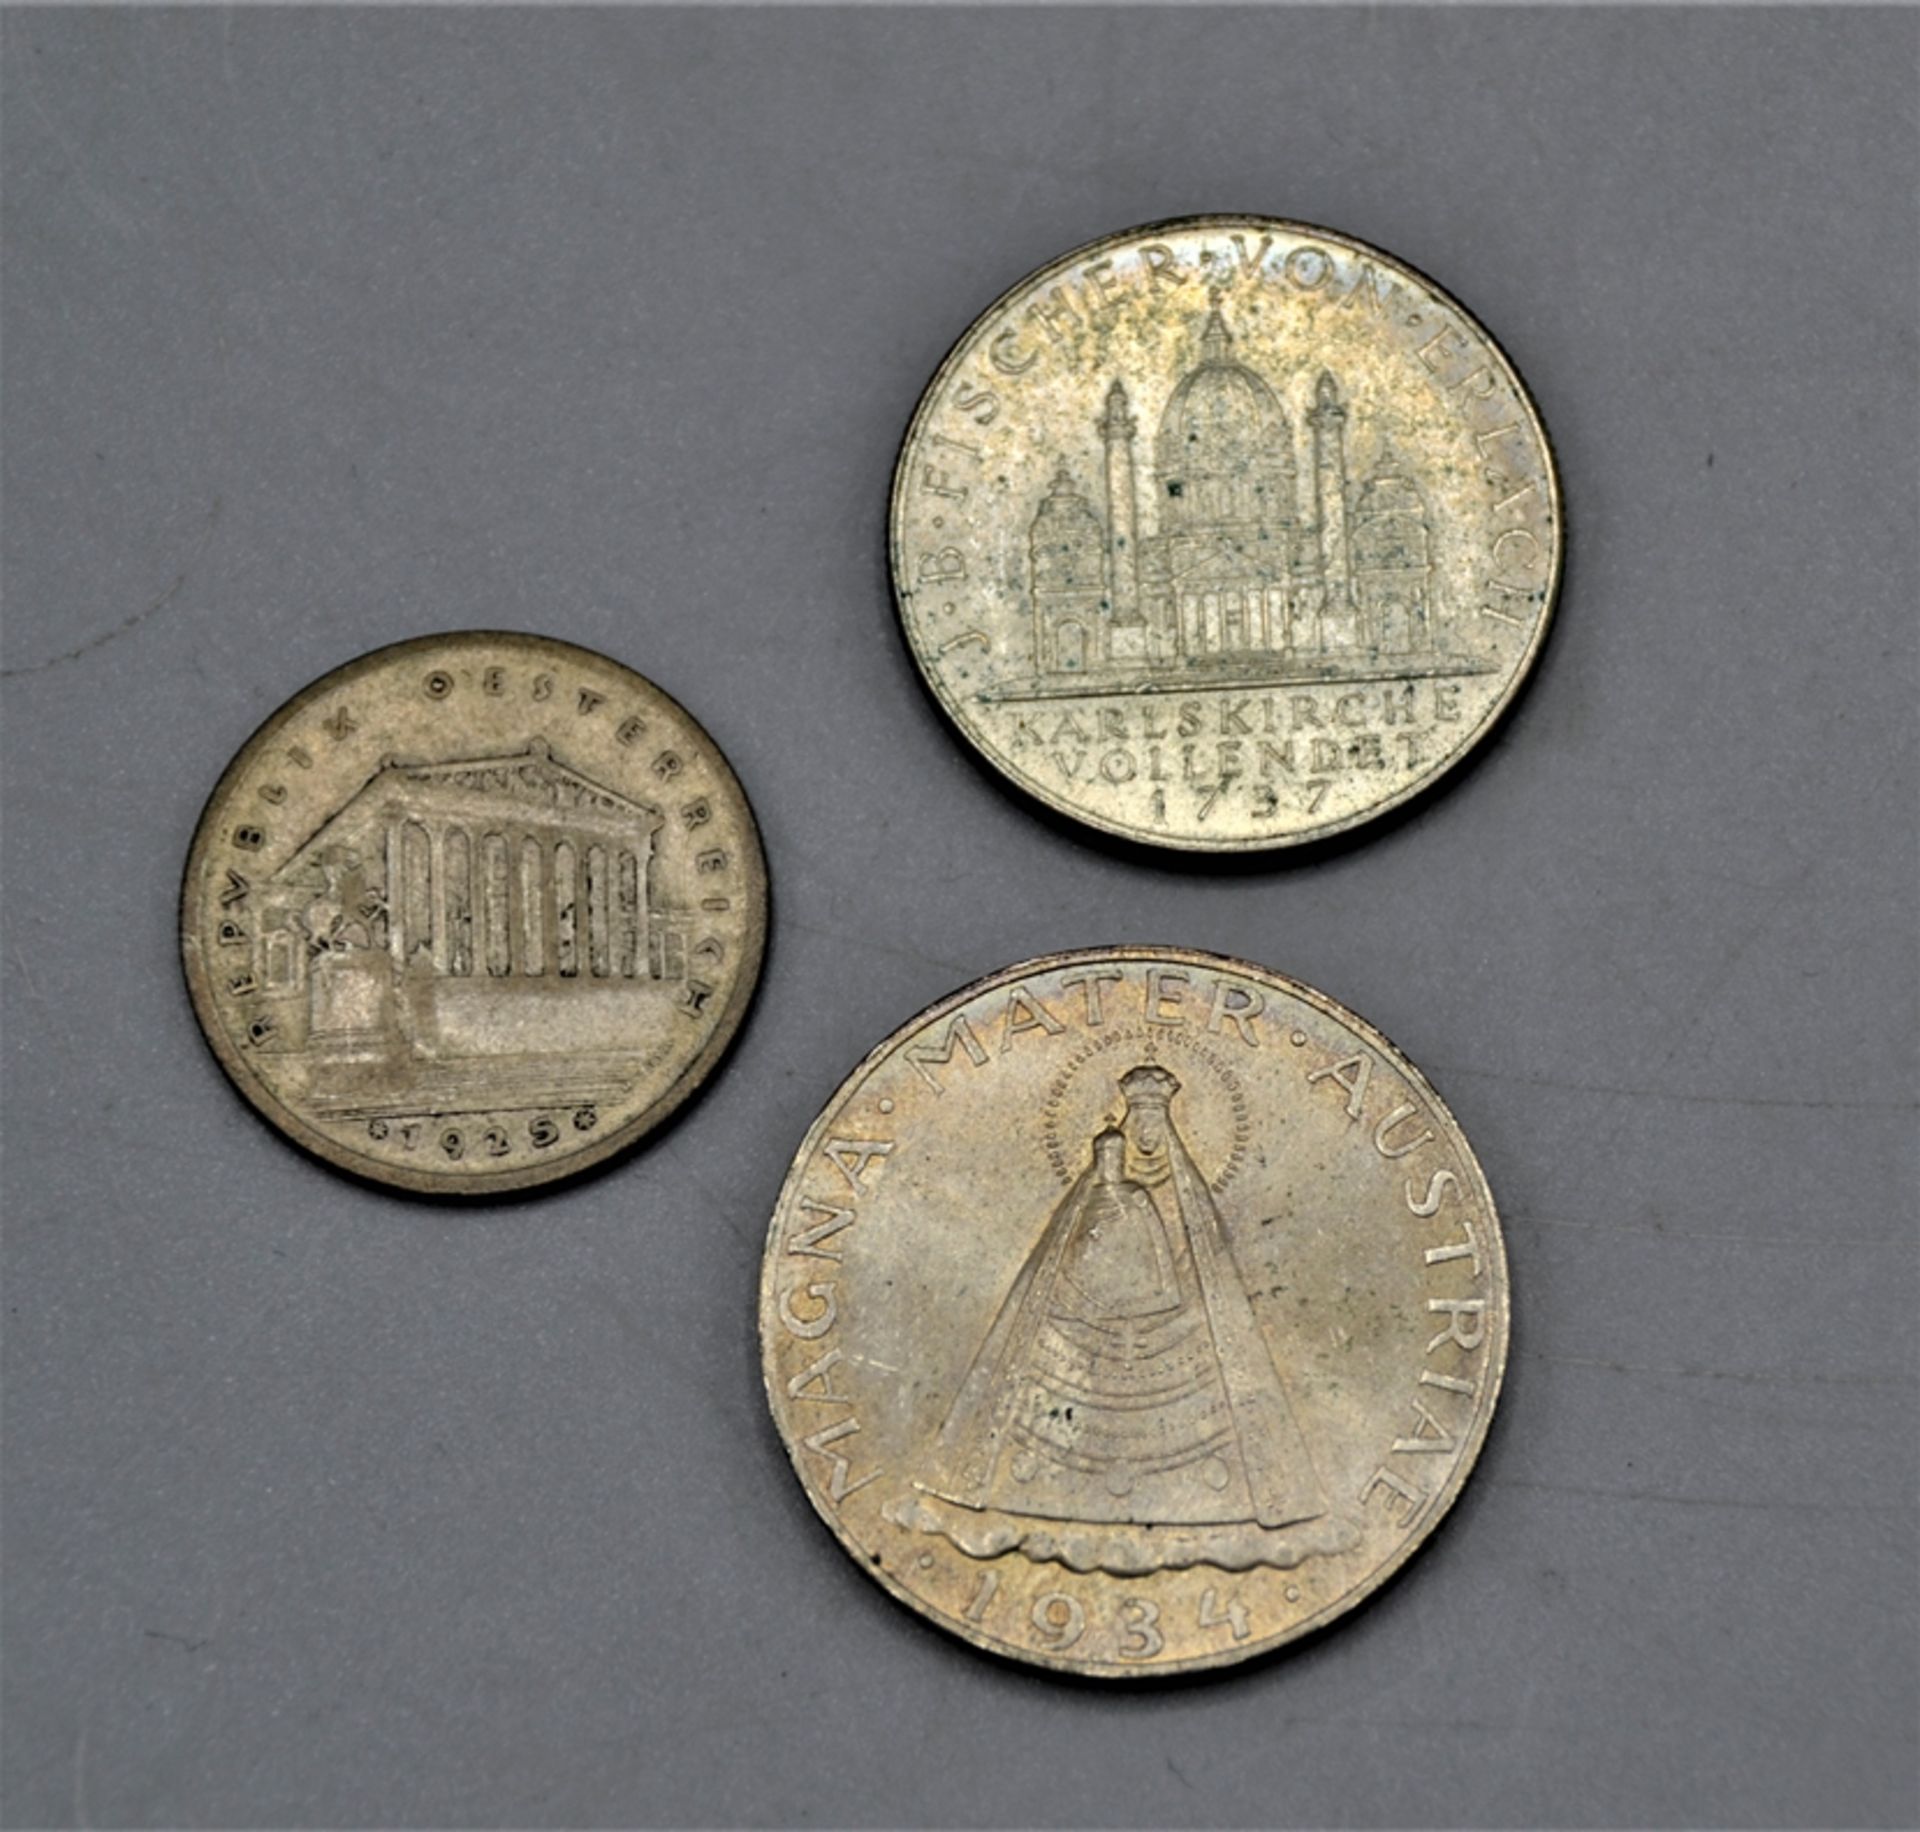 5 Schilling 1934 2 Schilling 1937 1 Schilling 1925 Silbermünzen